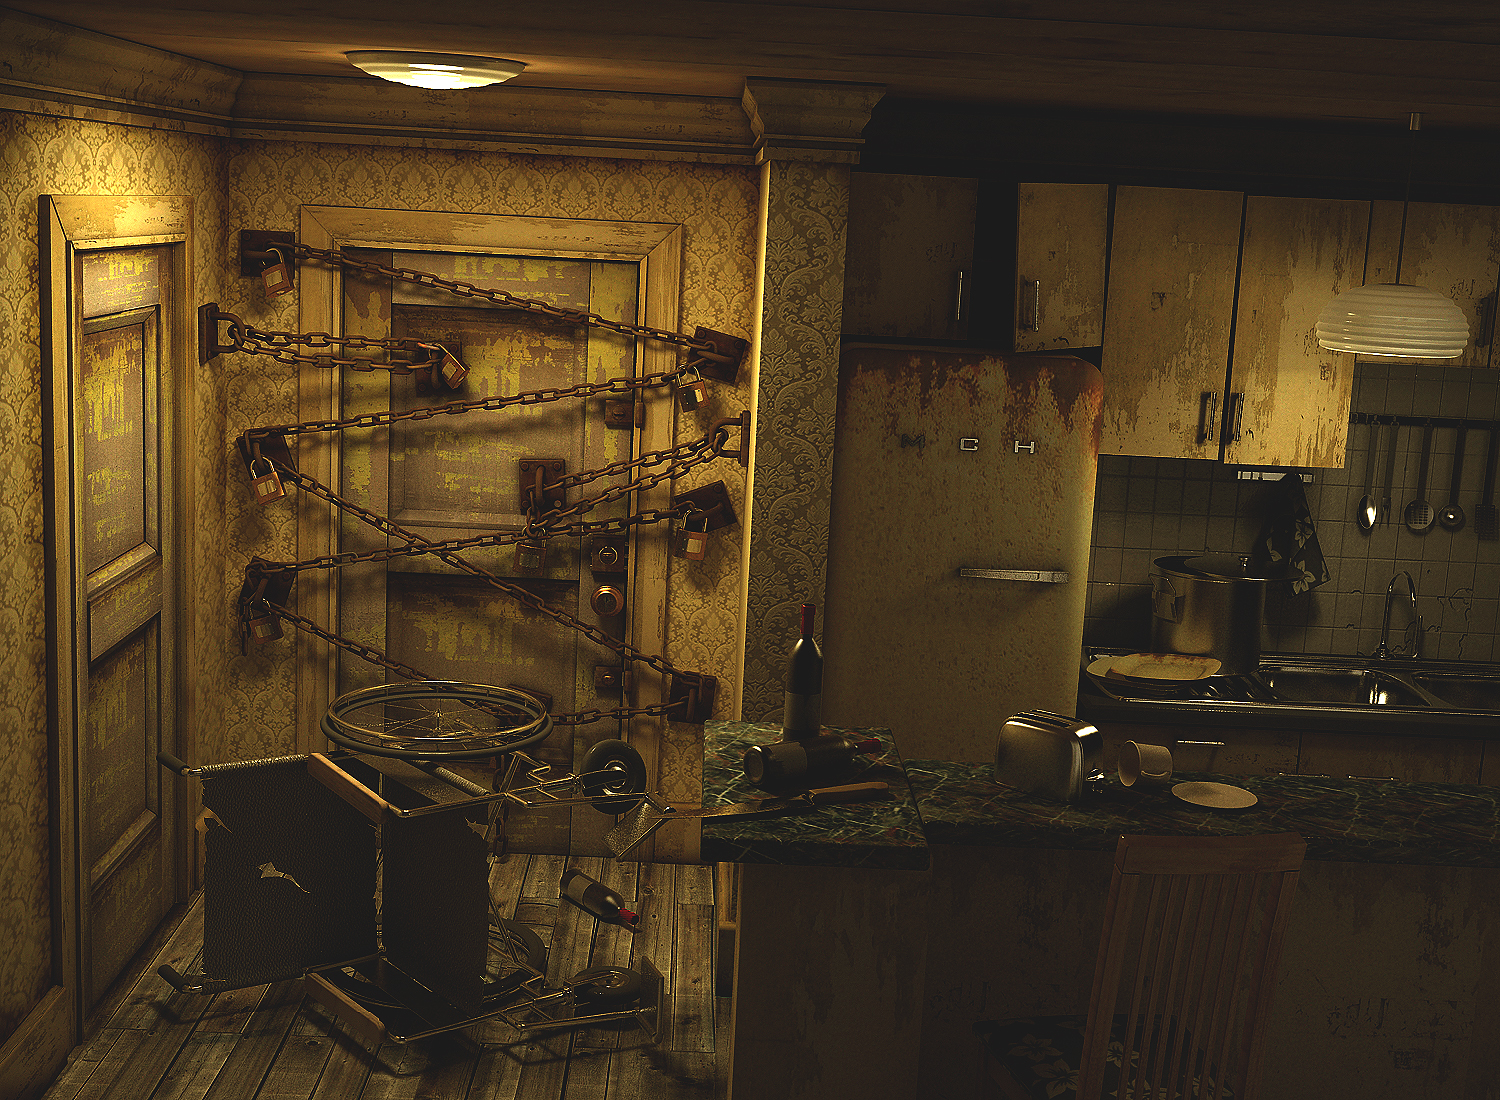 Silent Hill High Resolution , HD Wallpaper & Backgrounds